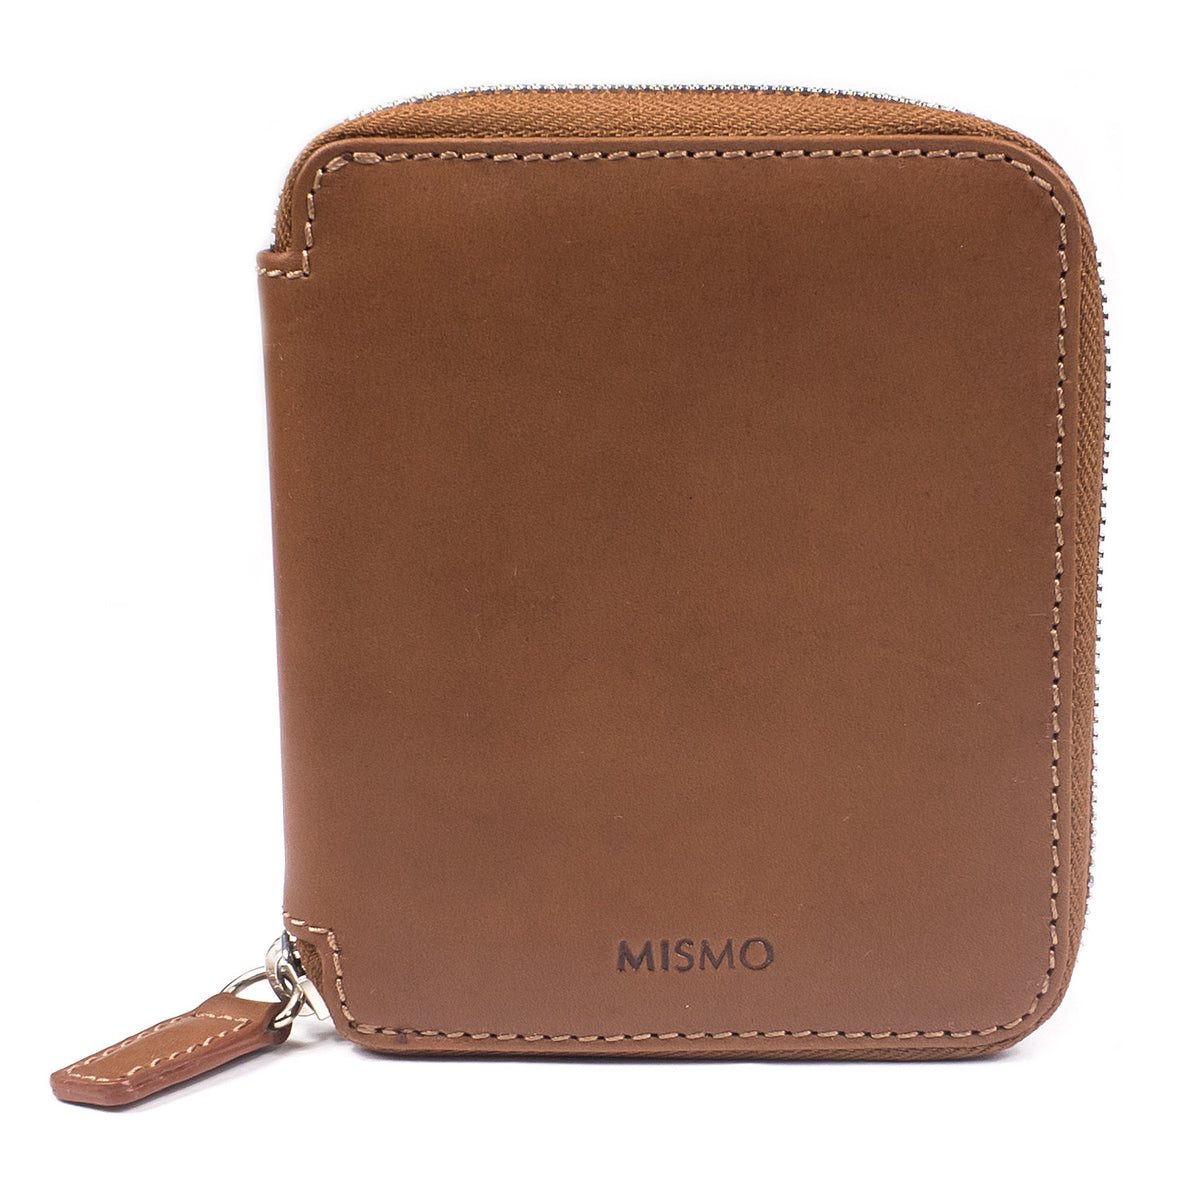 Mismo - Wallet - Tabac